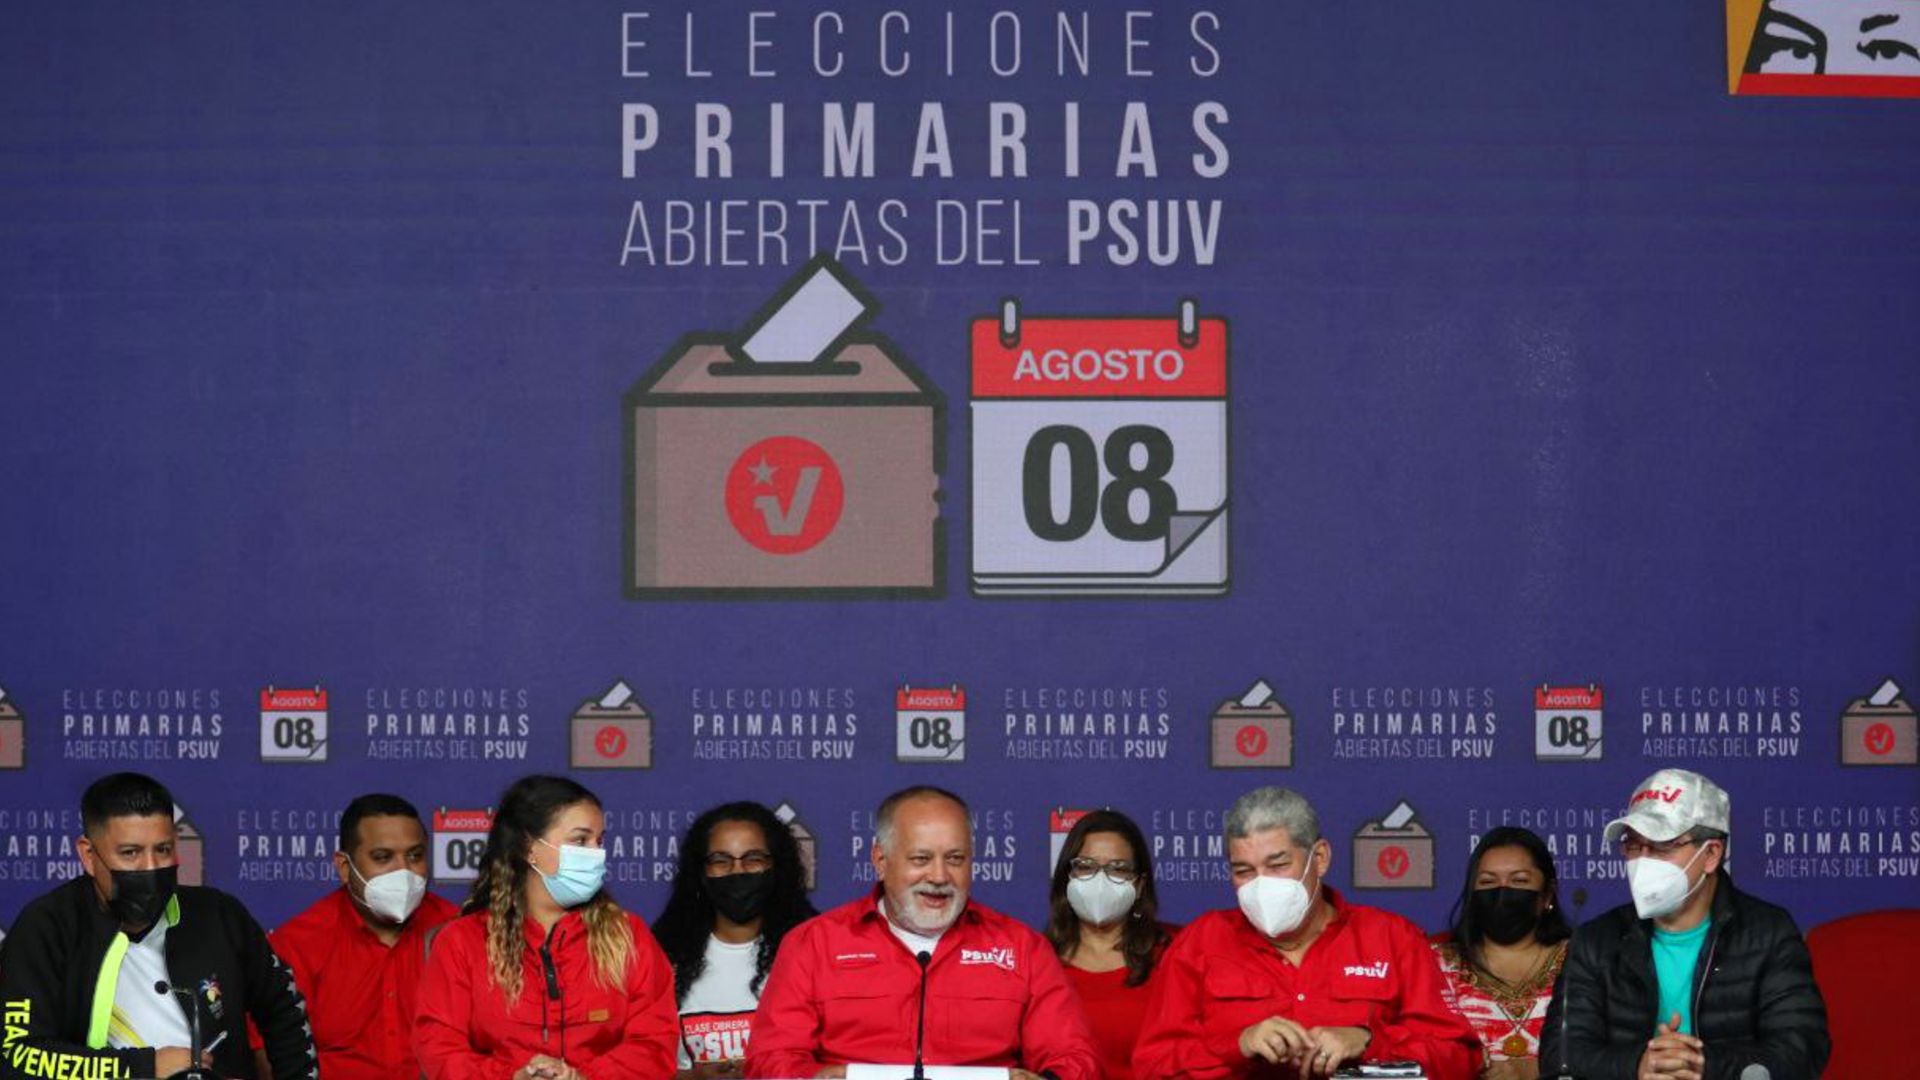 Aires de renovación y liderazgos emergentes arrojaron elecciones primarias del PSUV en Venezuela